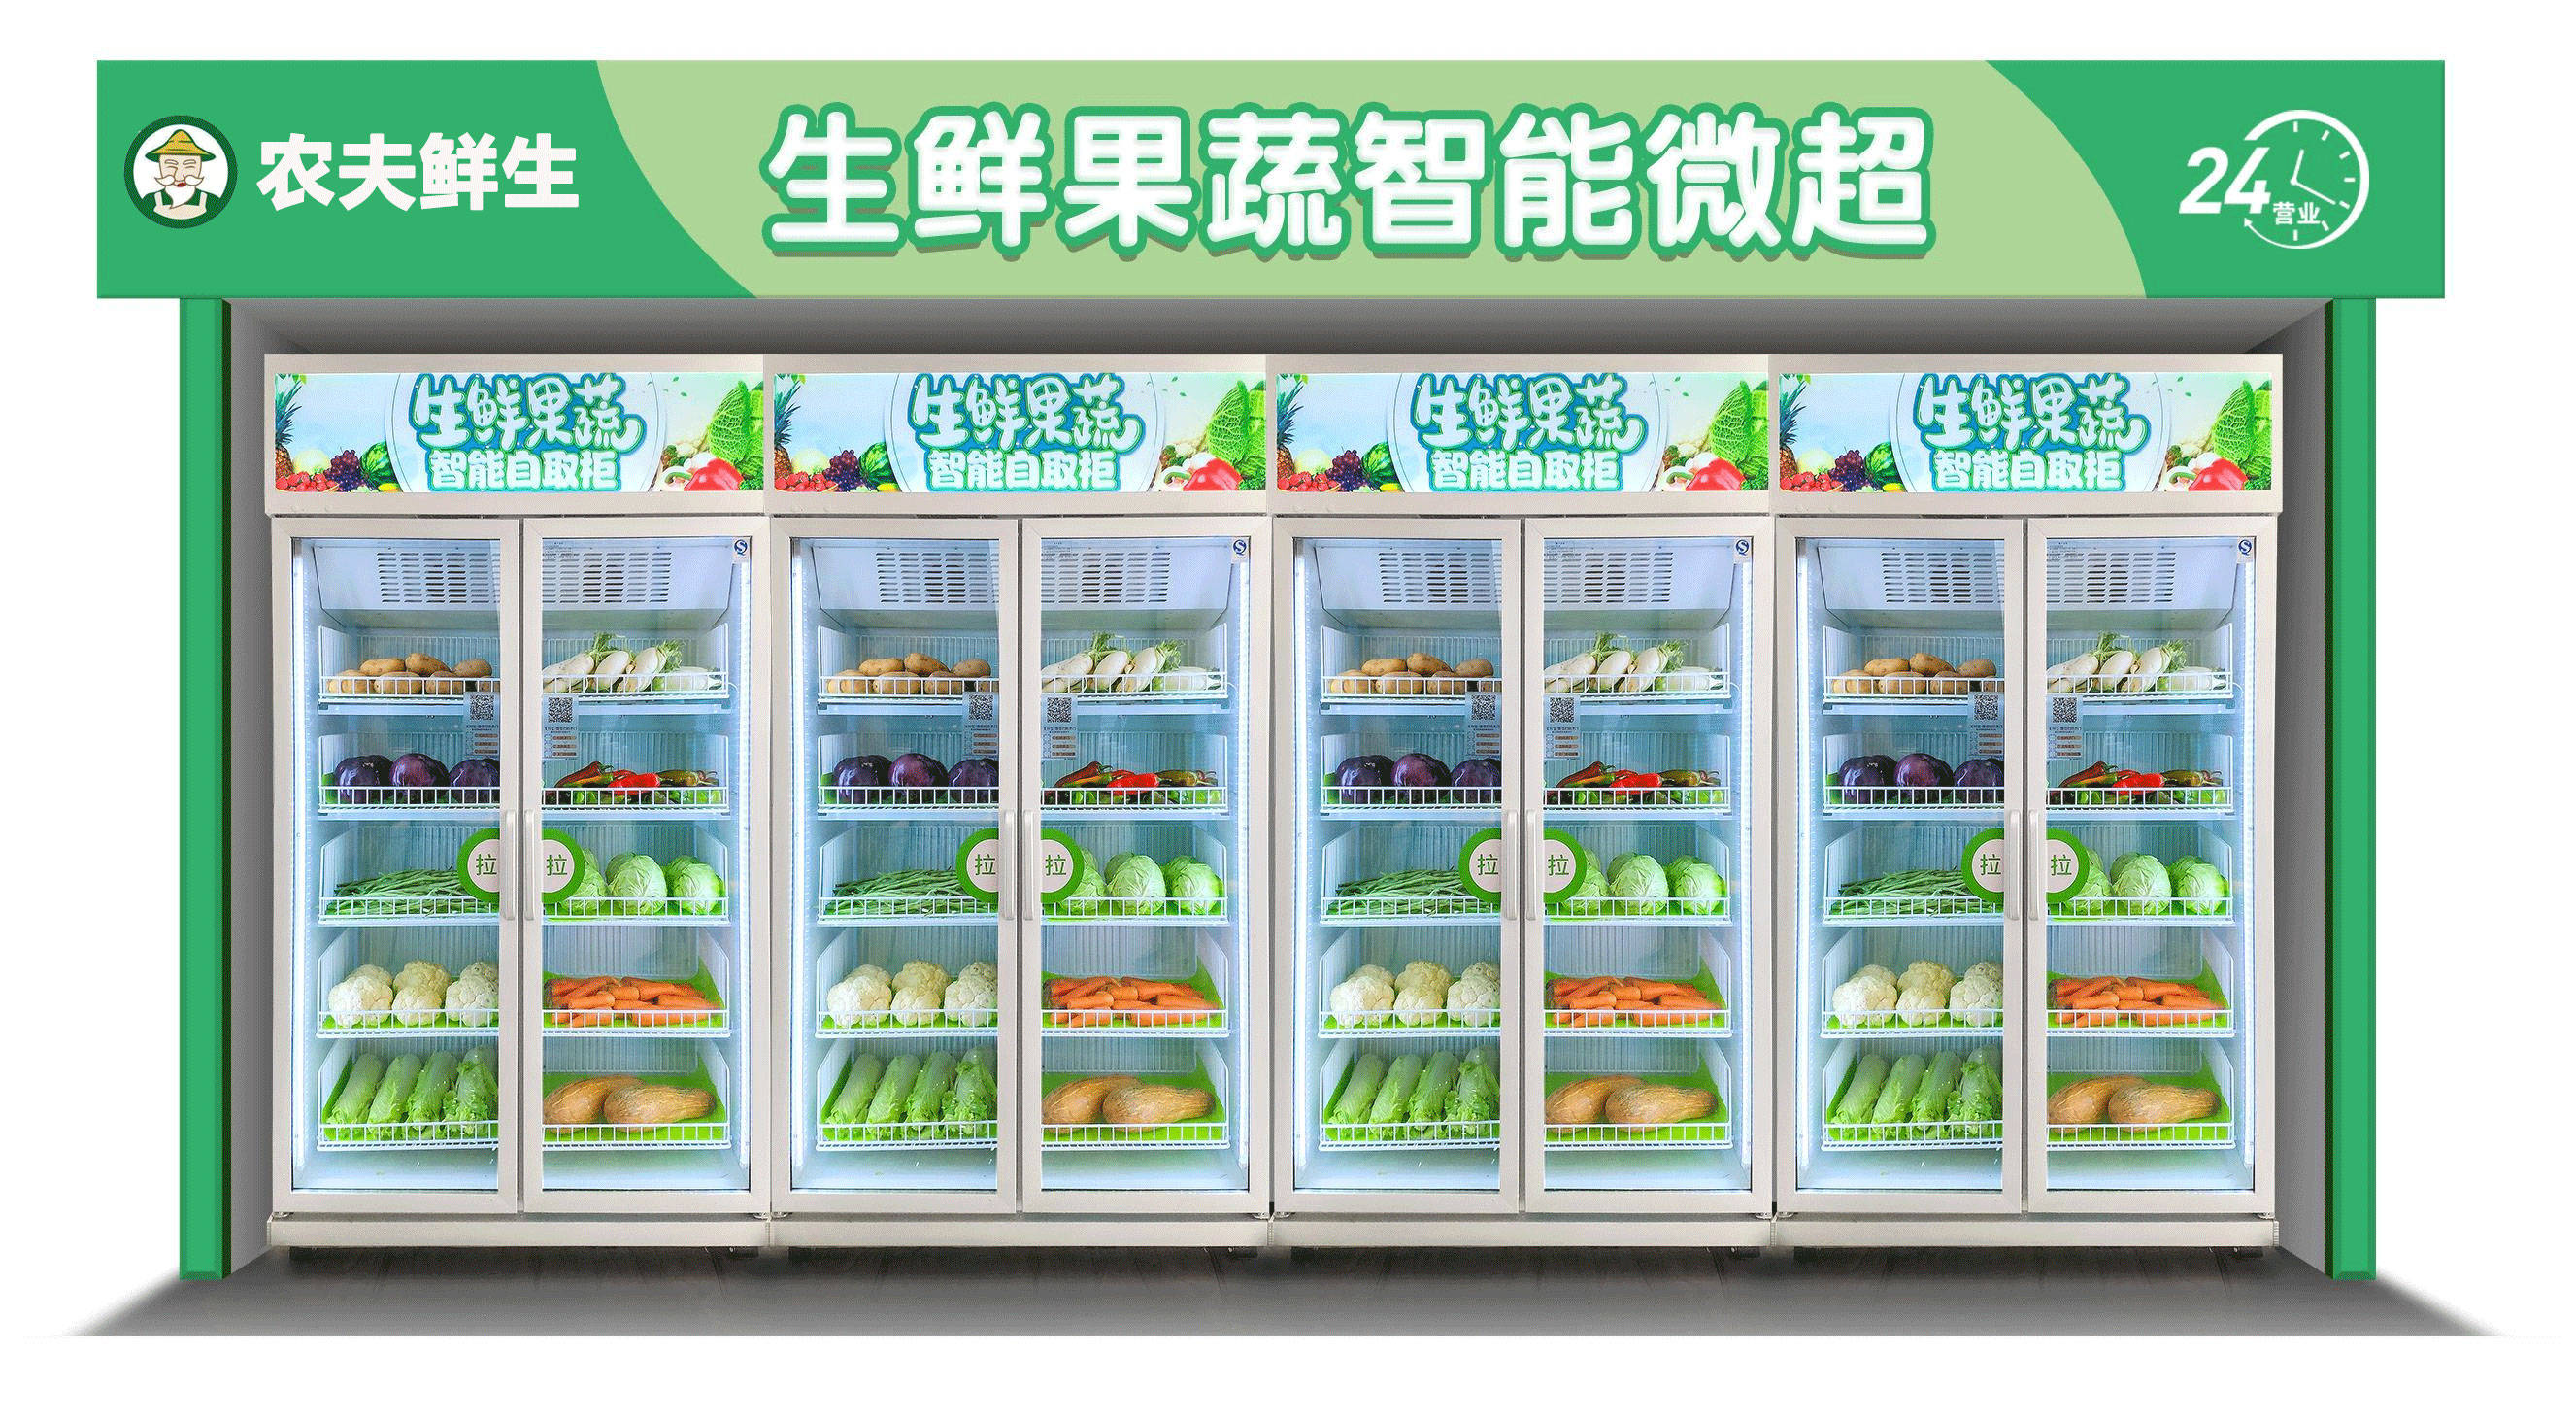 把菜市场装进冰箱的壹佰米农夫鲜生自动生鲜蔬菜售卖机是怎么样火起来